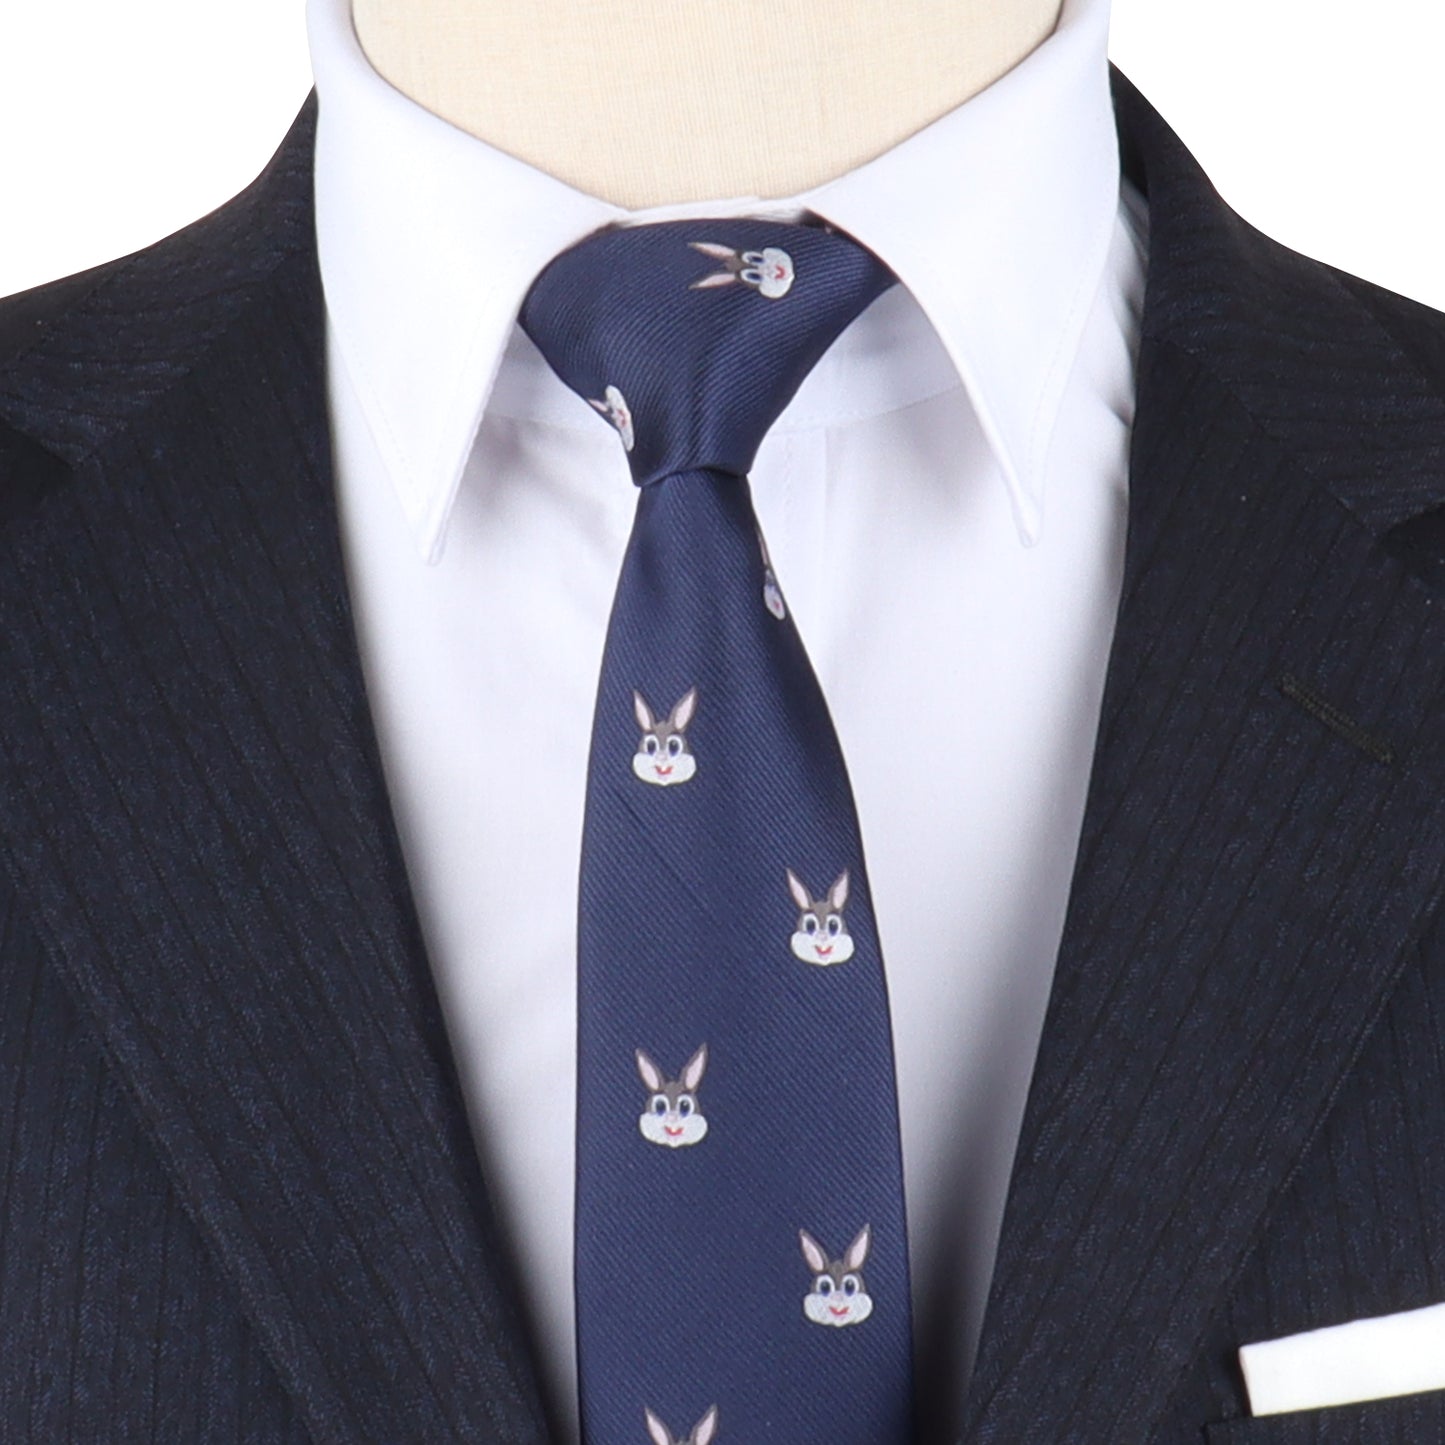 Bunny Skinny Tie